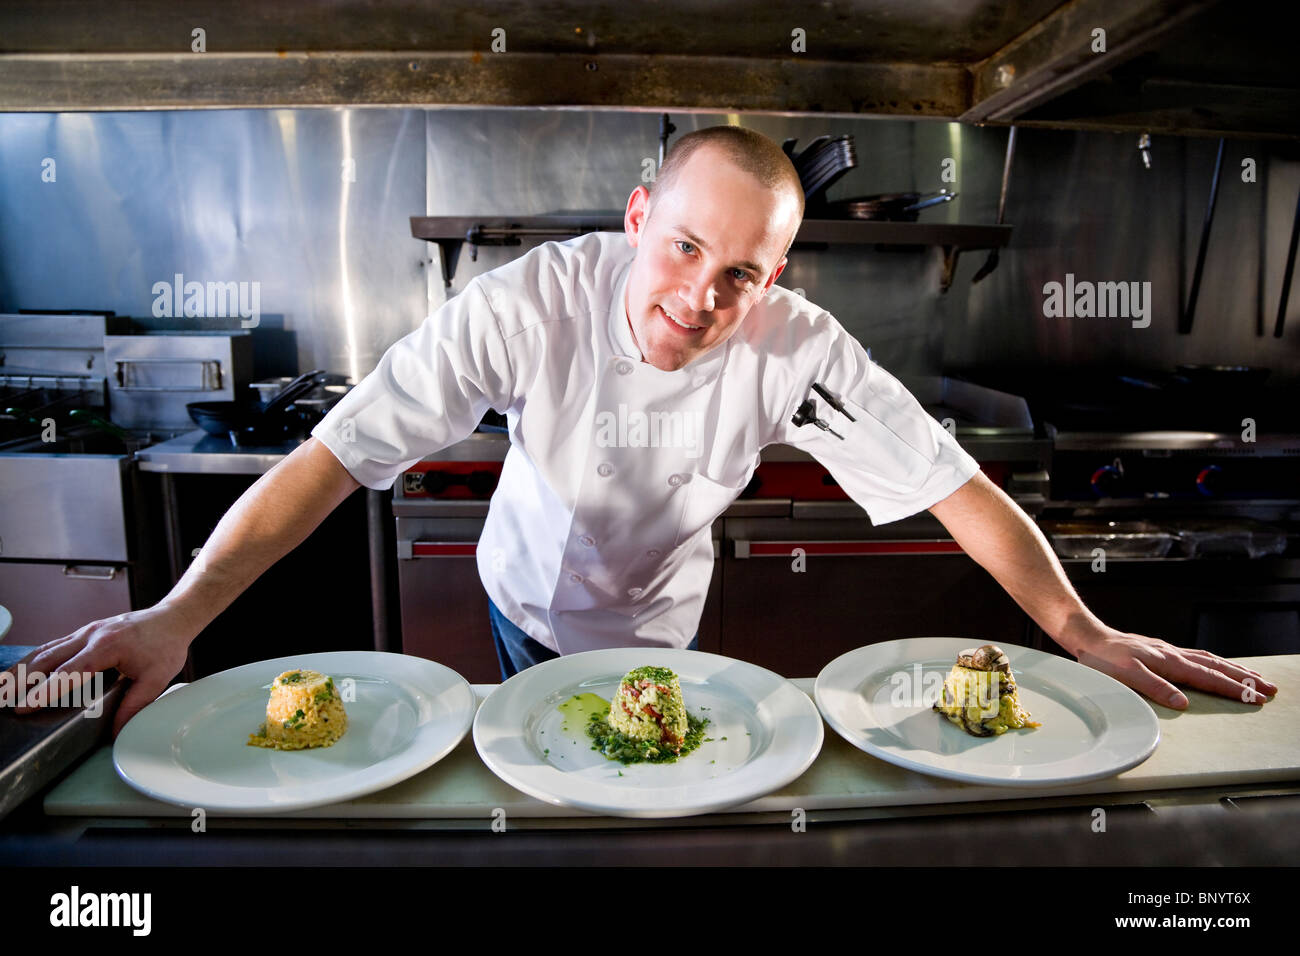 Chef in restaurant kitchen preparing gourmet dishes Stock Photo ...